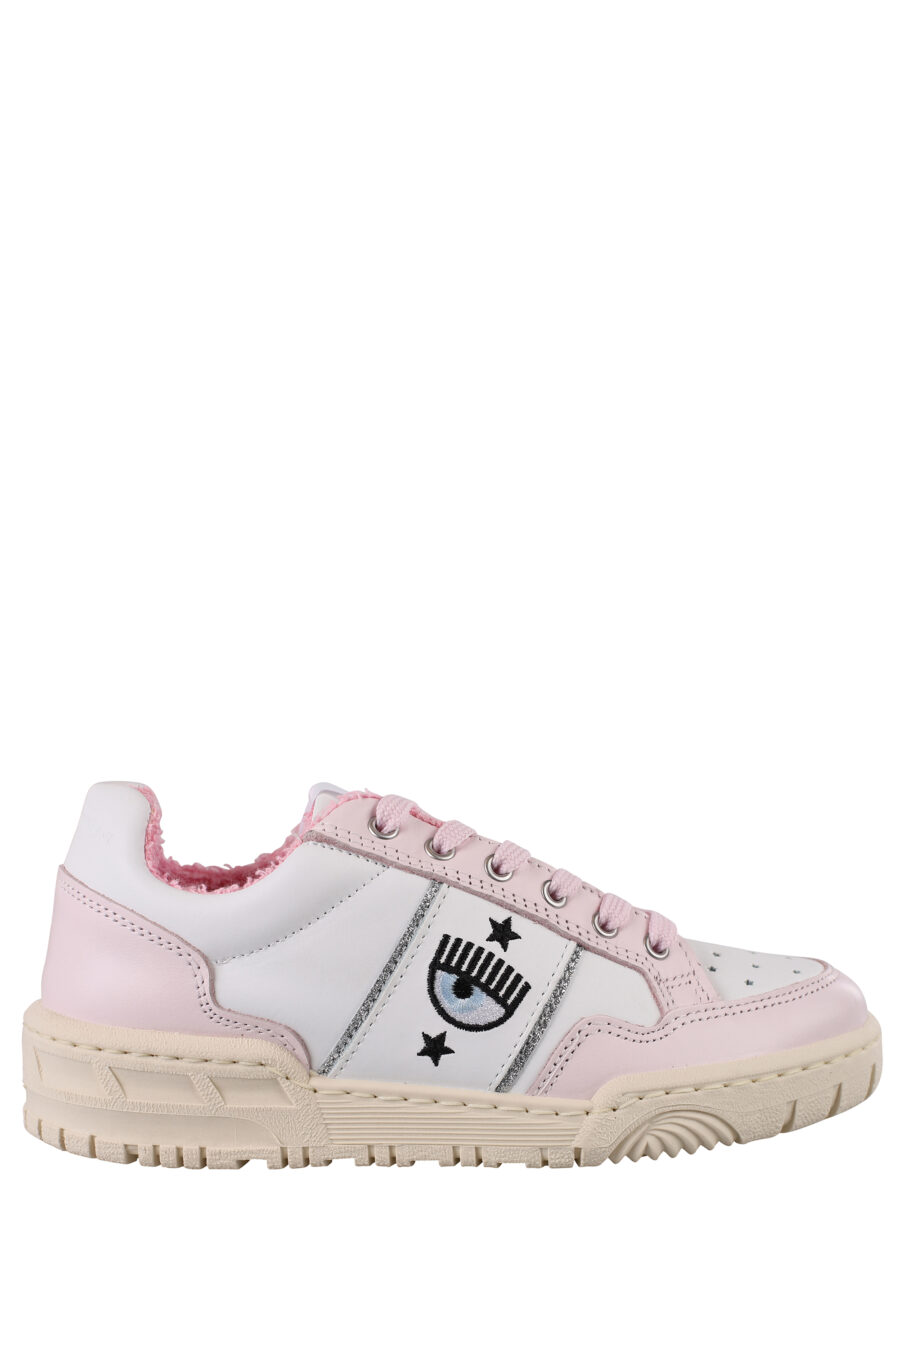 Zapatillas blancas y rosas con logo ojo e interior felpudo - IMG 1161